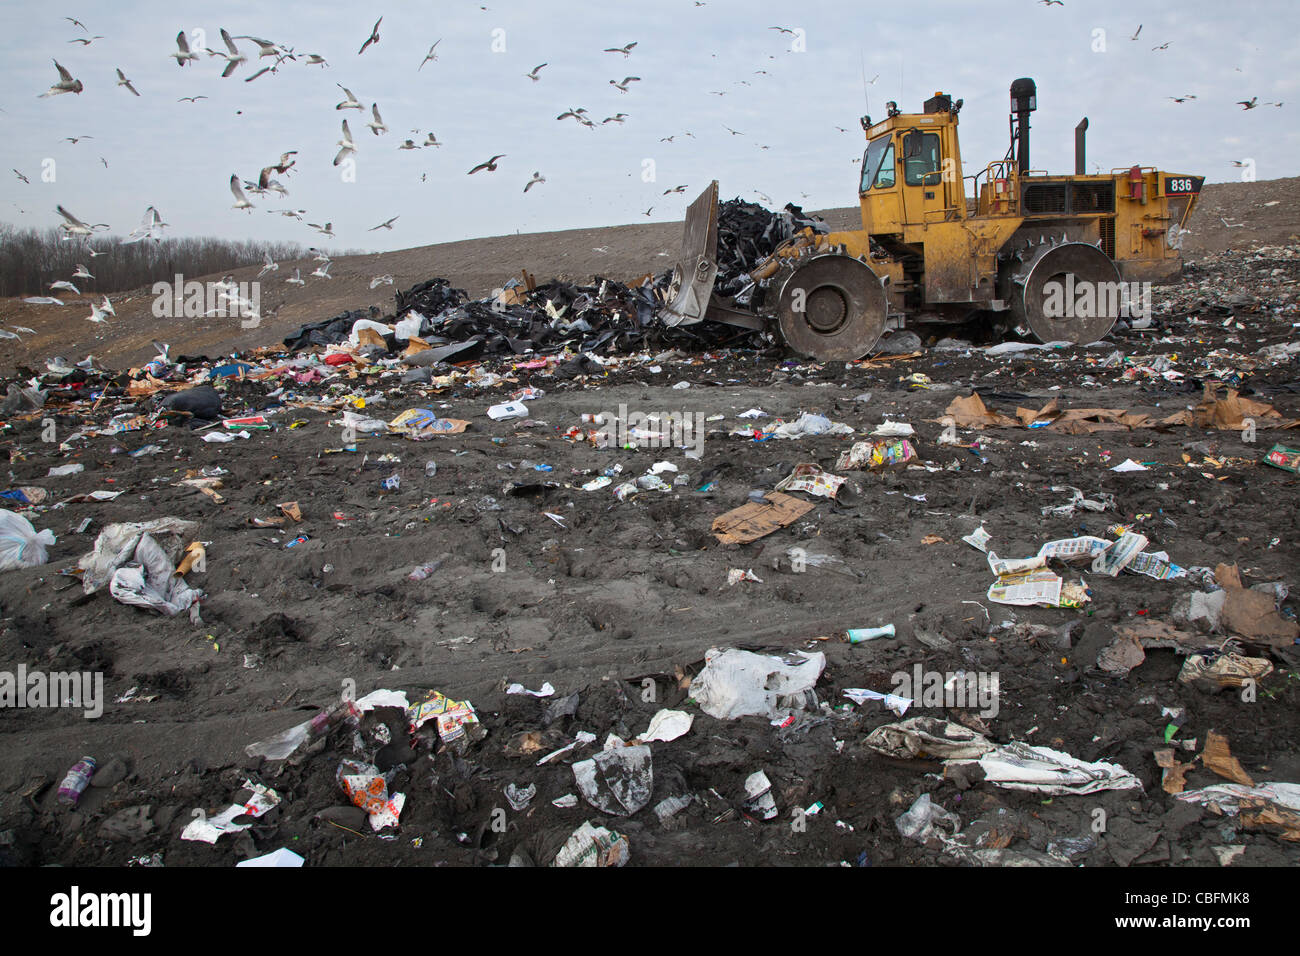 Smith's Creek, Michigan - un bulldozer livelli e compatti garbage a St Clair County's Smith's Creek discarica. Foto Stock